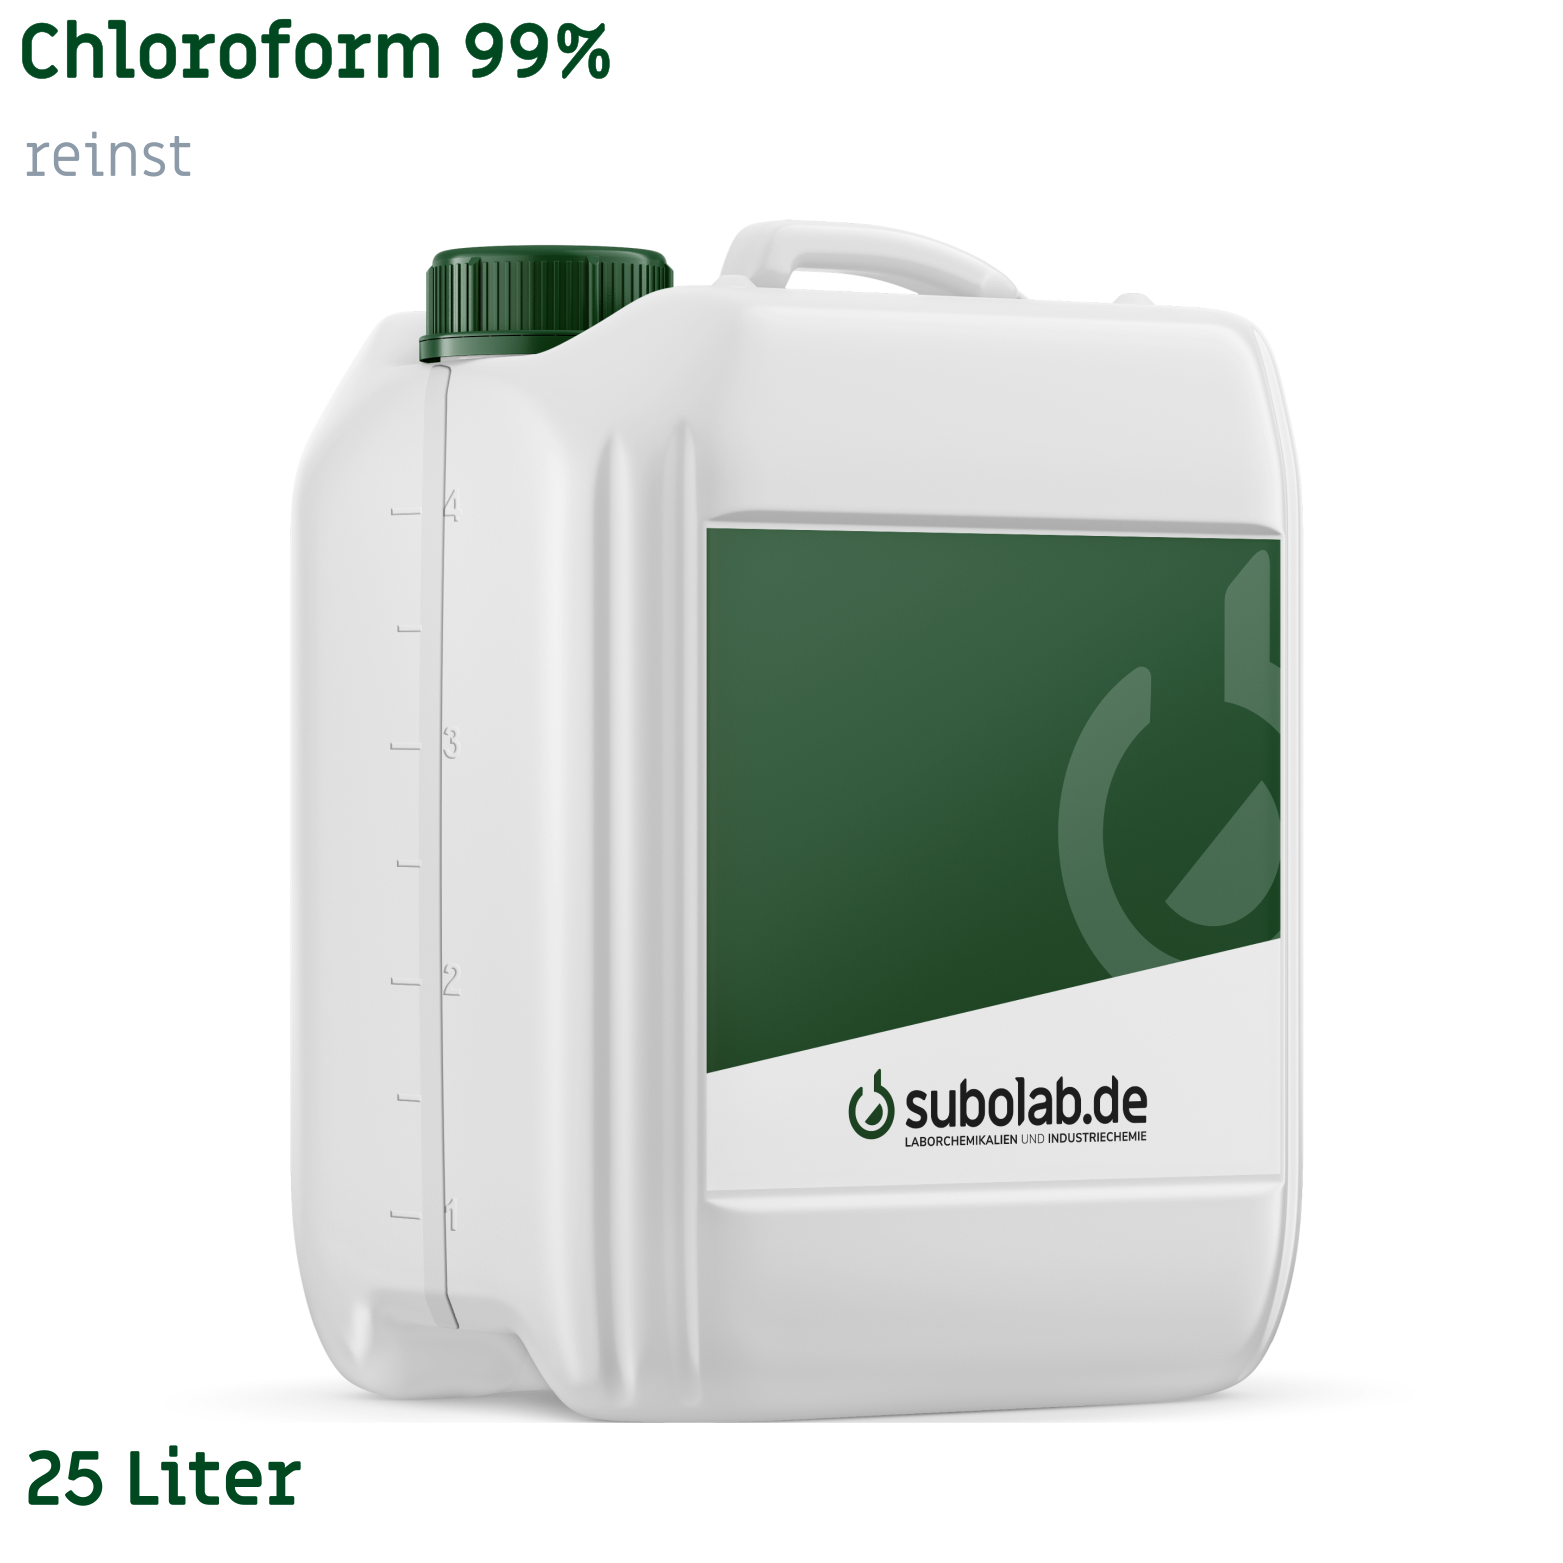 Bild von Chloroform 99% reinst (25 Liter)